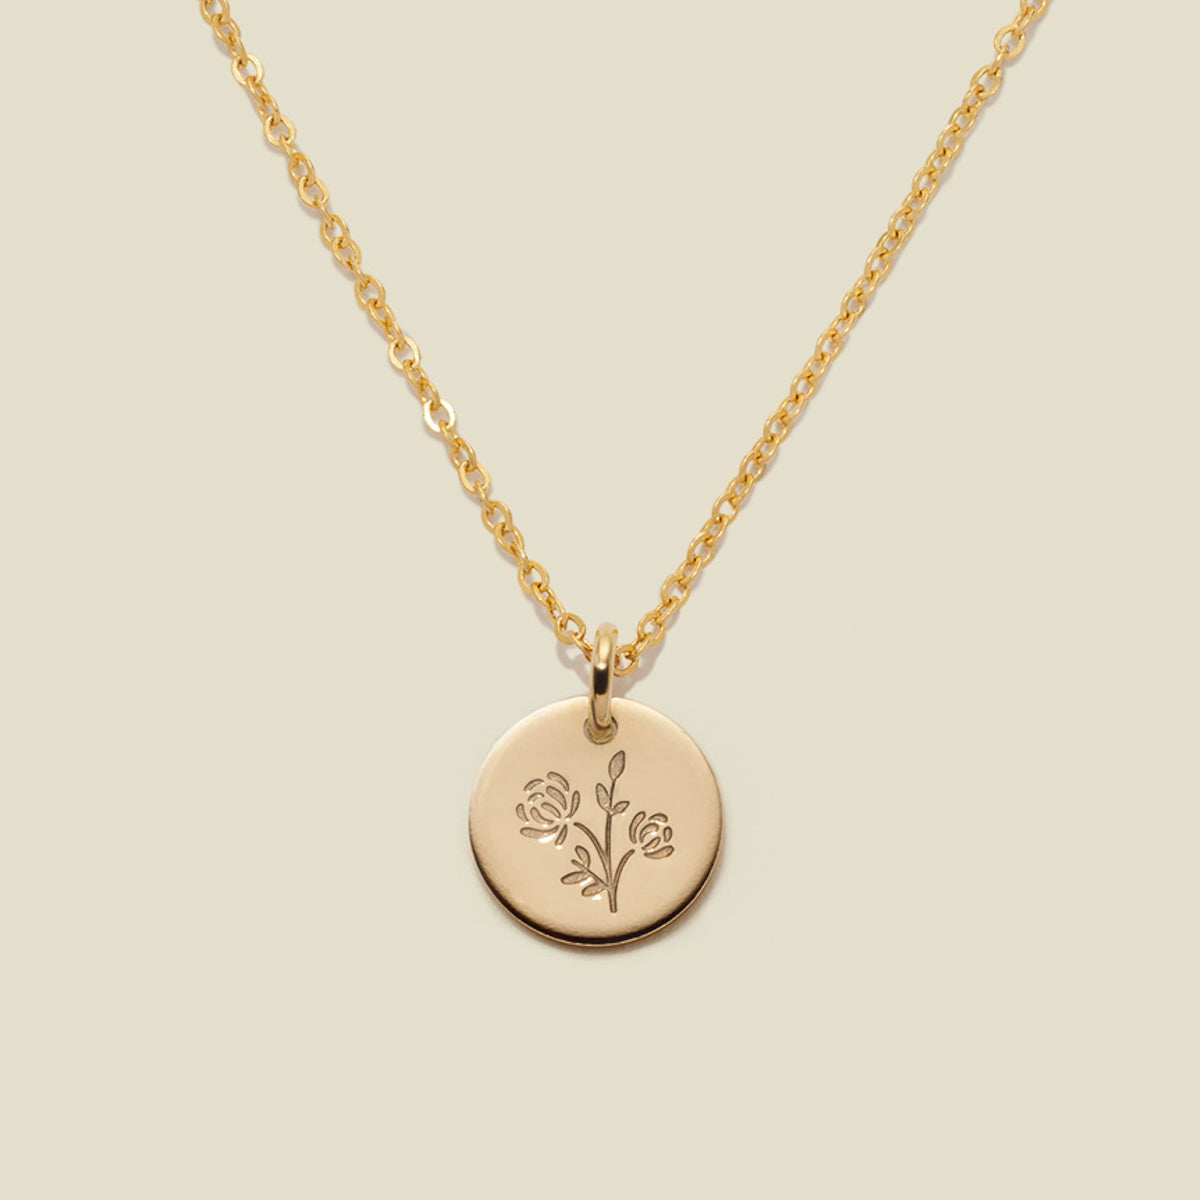 November Birth Flower Necklace Gold Filled / 3/8" / 16"-18" Necklace